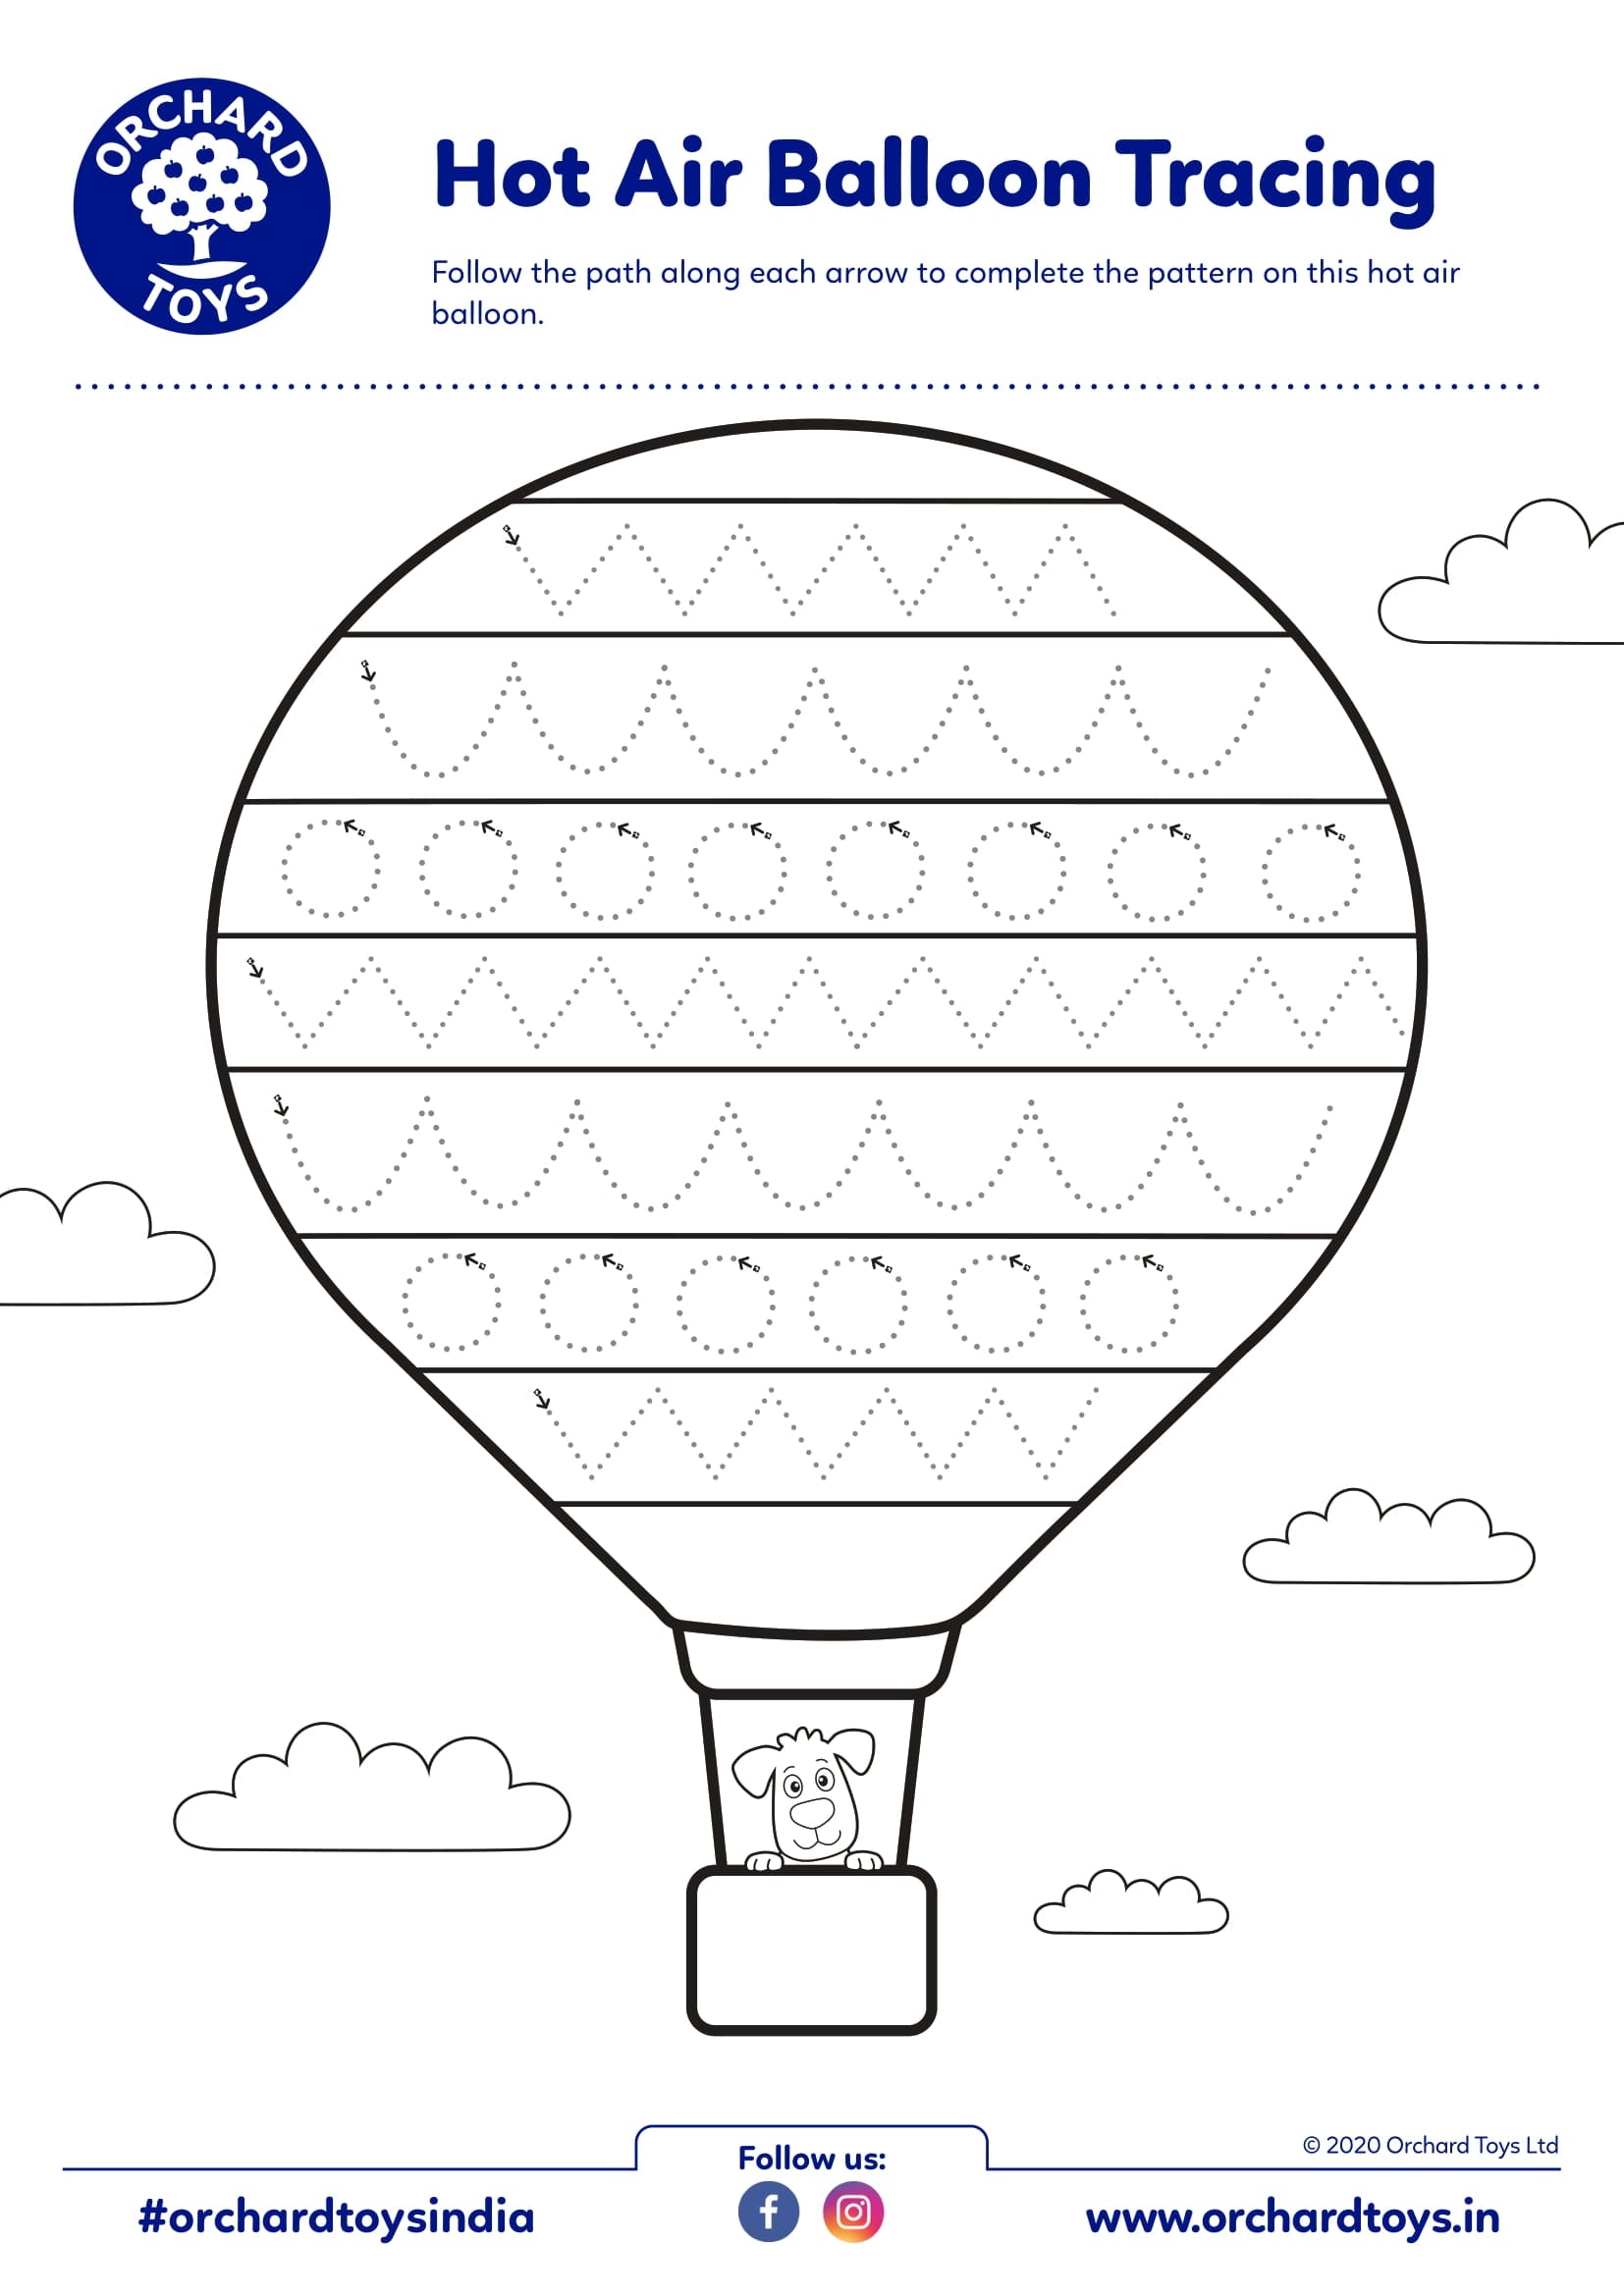 Hot Air Balloon Tracing Sheet